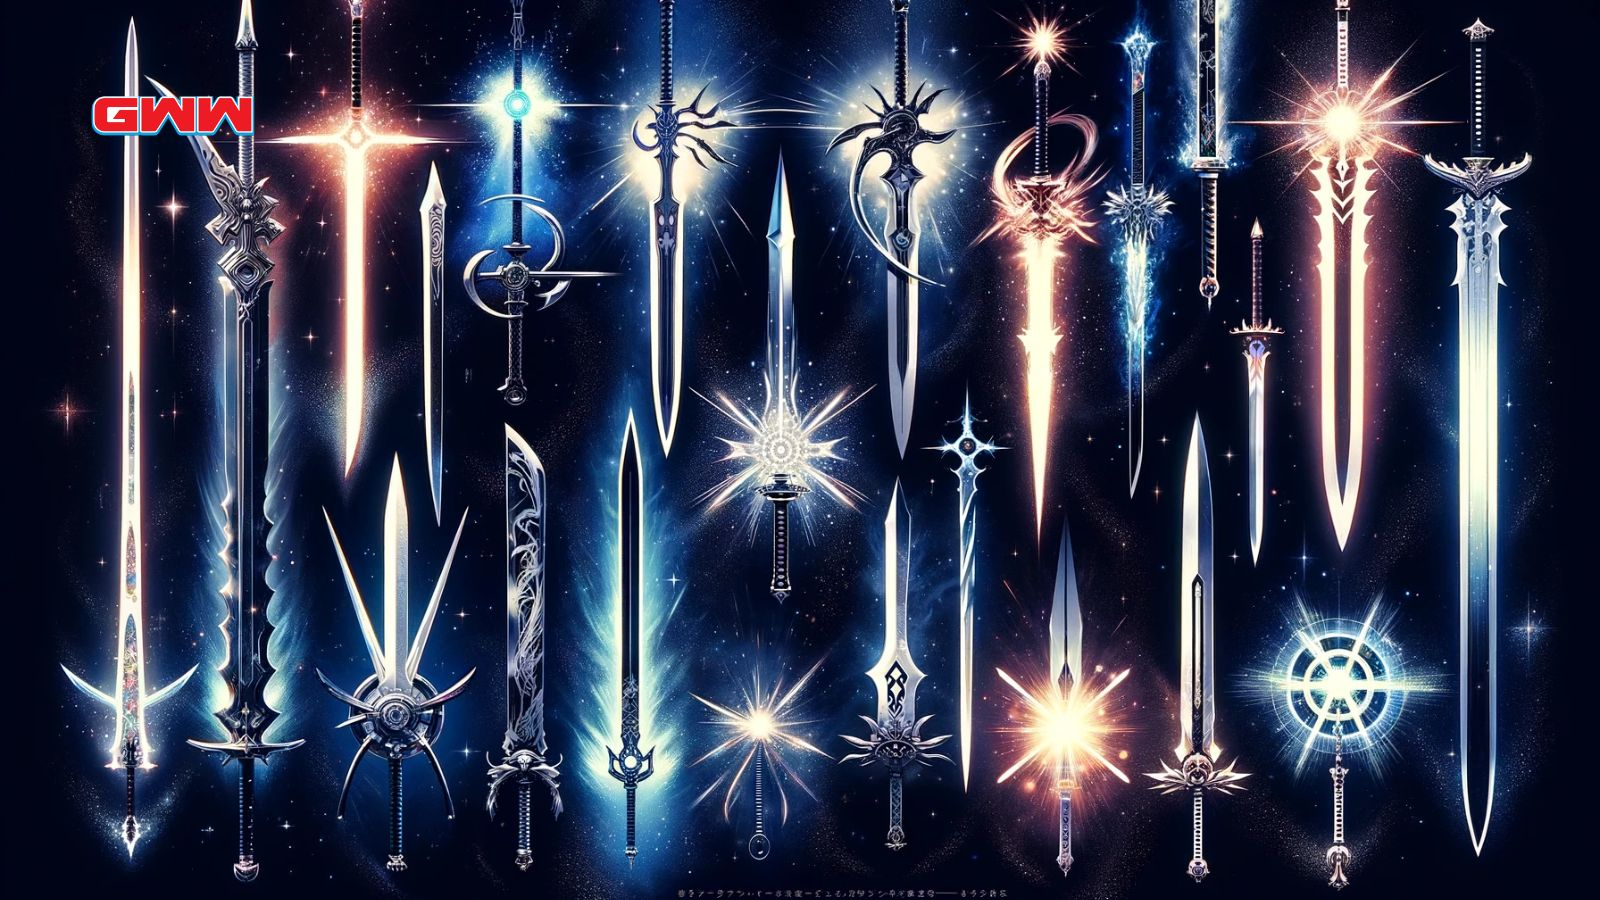 Montaje de espadas de anime con fondo cósmico y efectos luminosos.